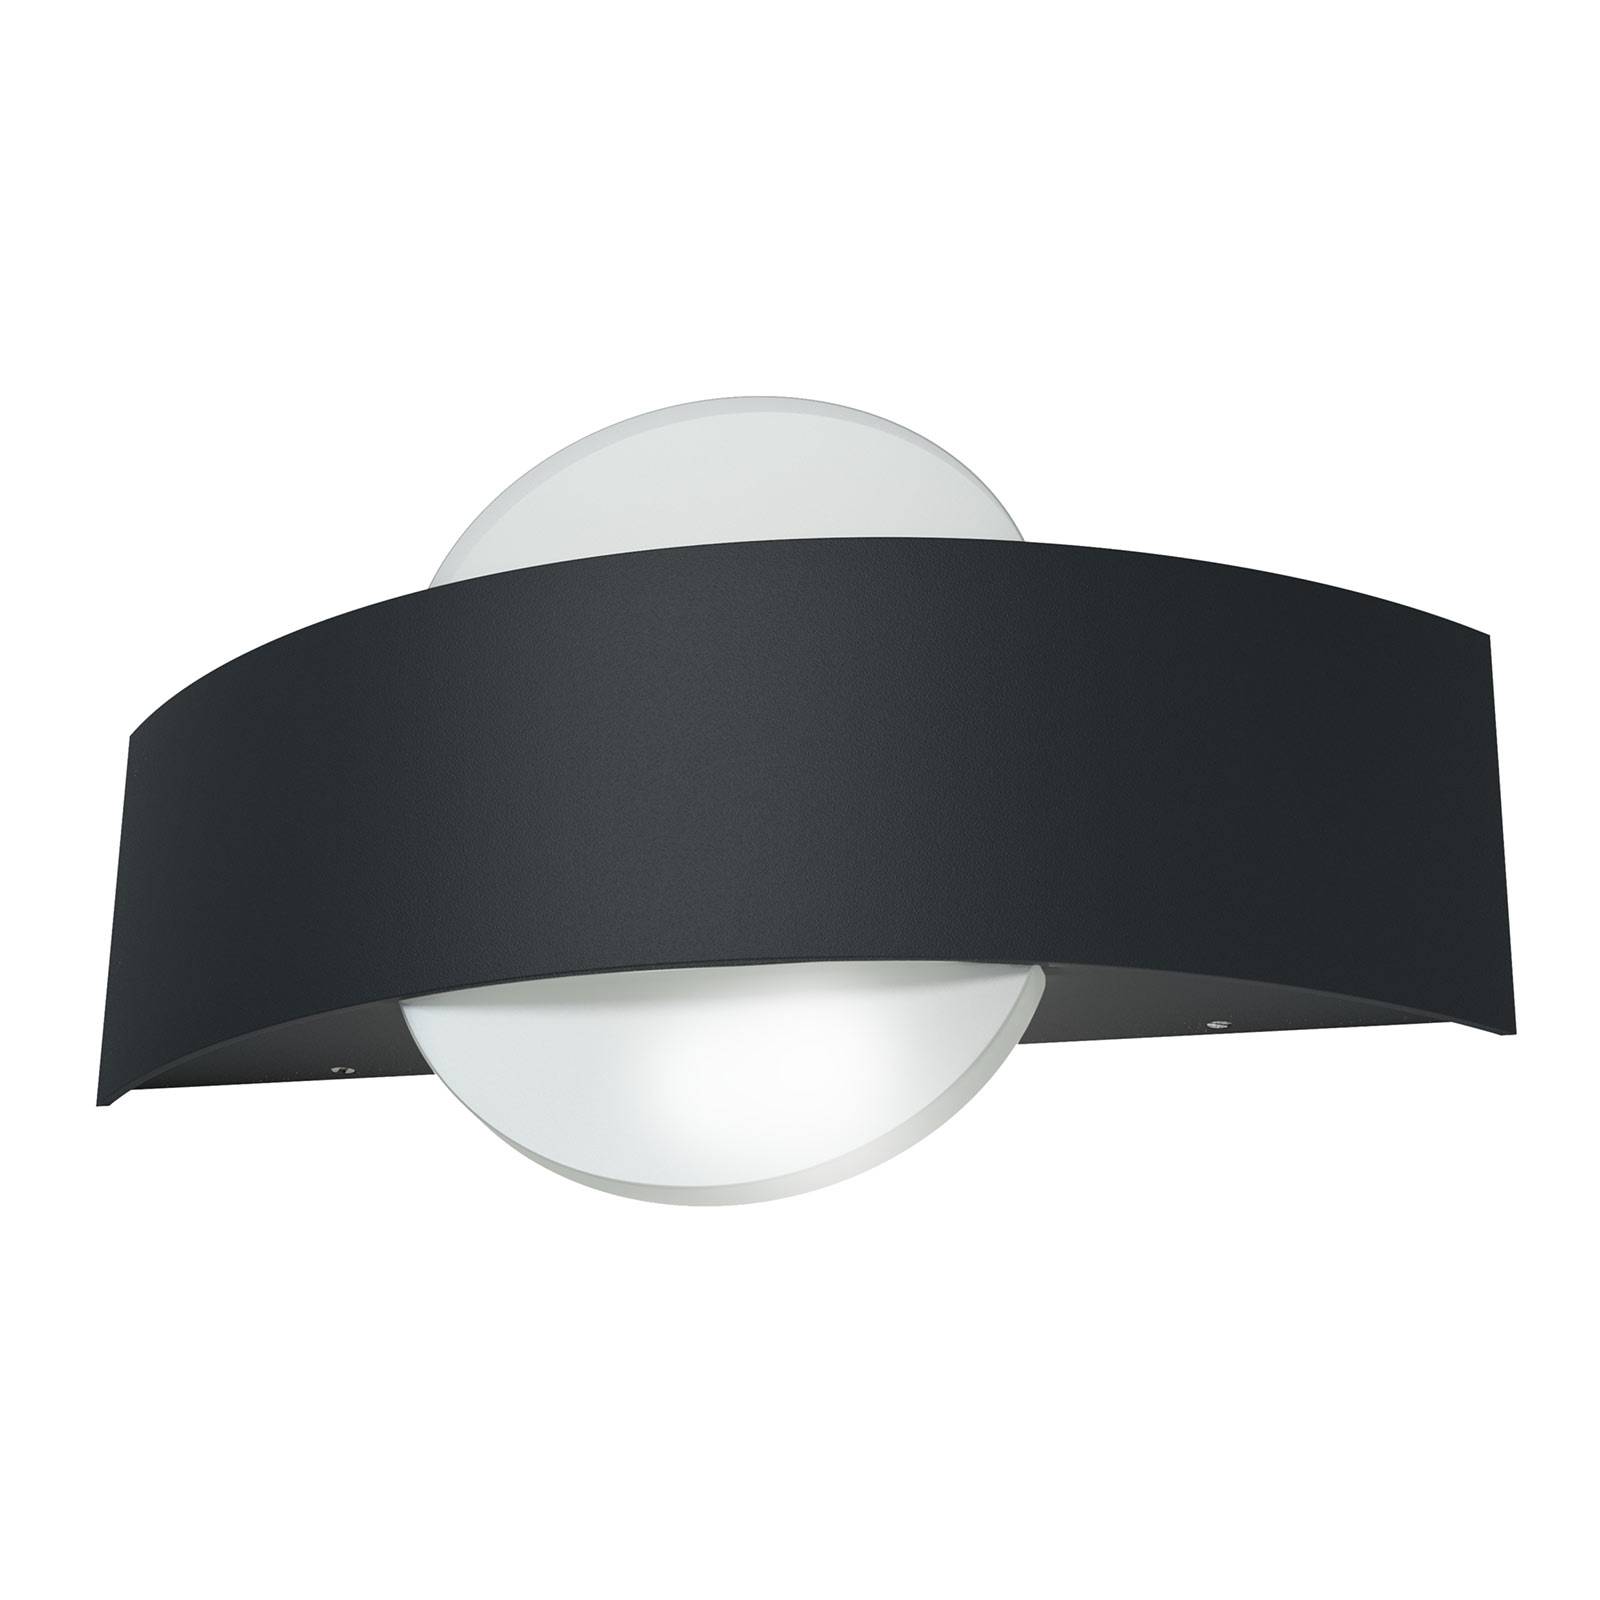 LEDVANCE Endura Style Shield Round buitenwandlamp